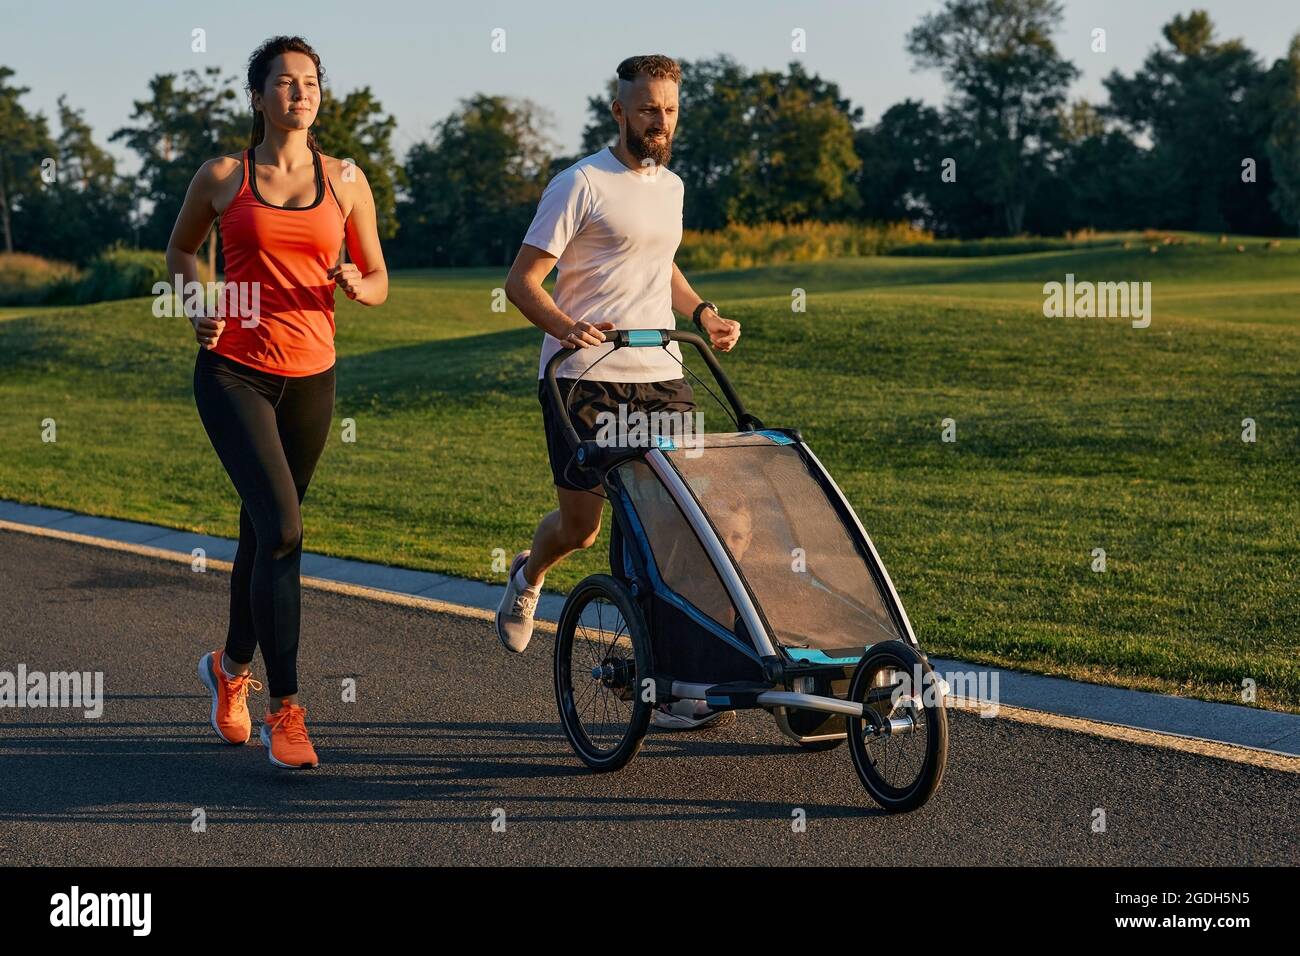 Jeune famille avec leur enfant dans une poussette de jogging pendant le jogging dans un parc. Famille active courant Banque D'Images